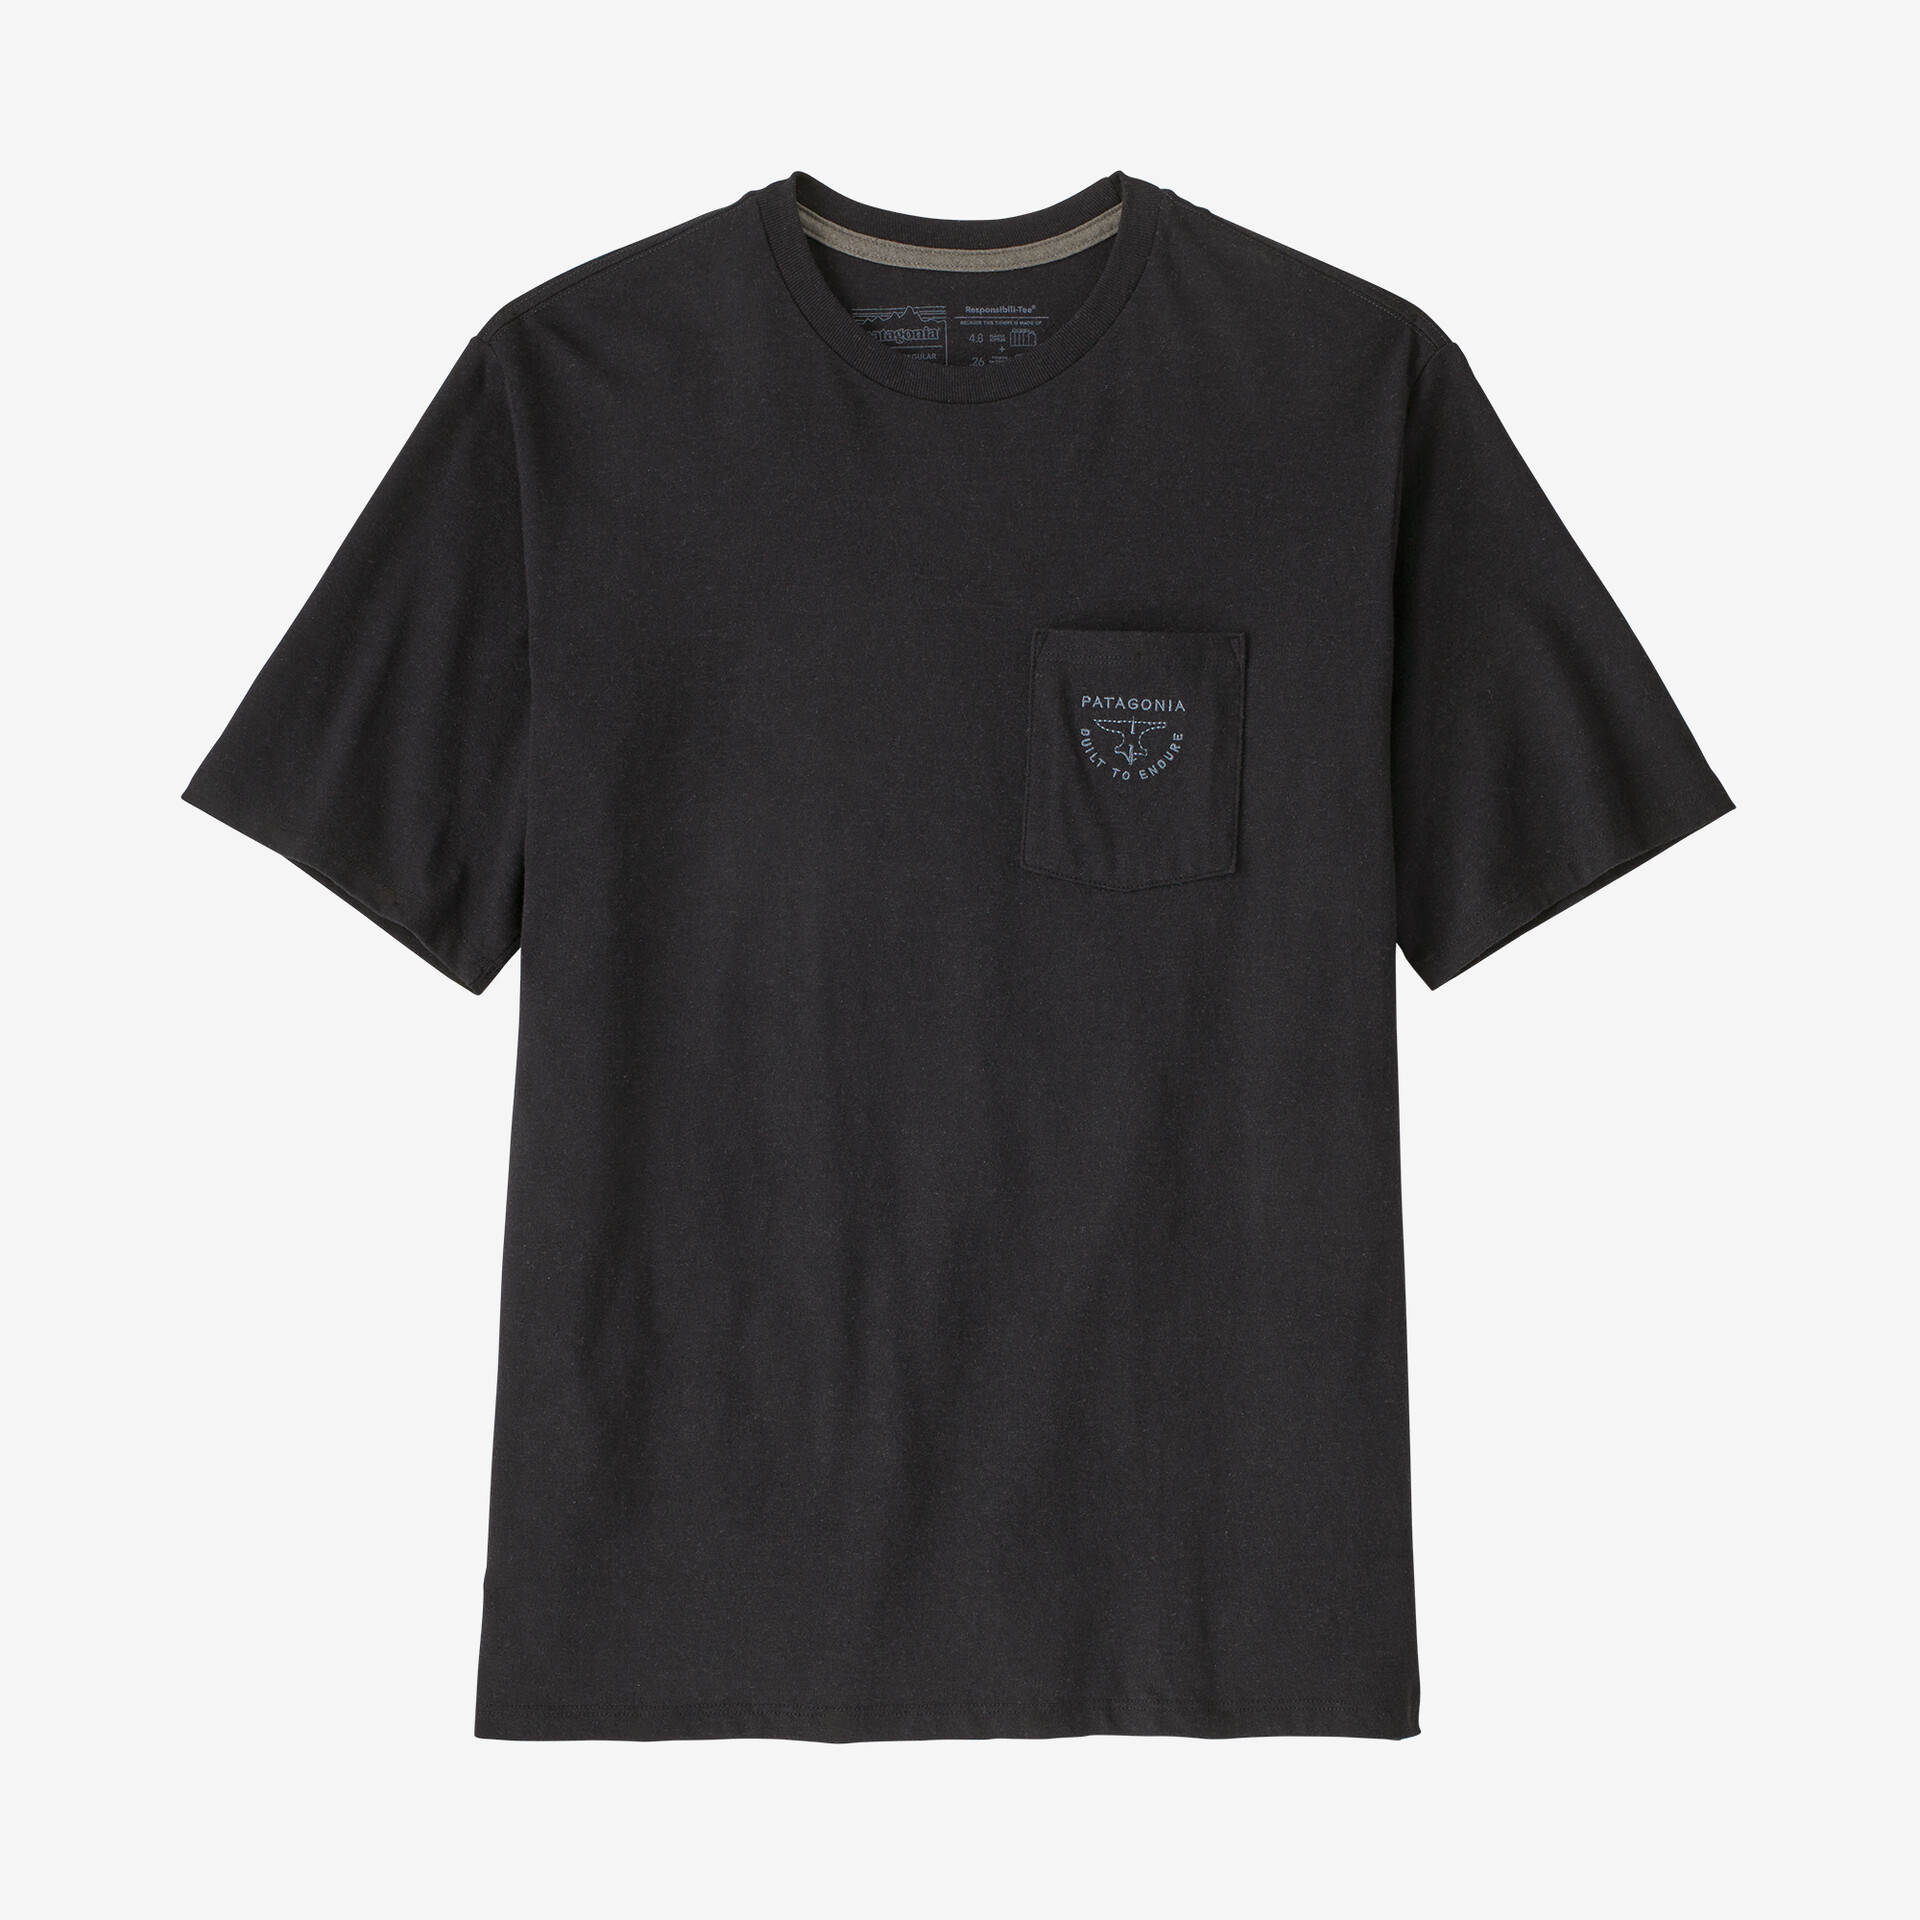 Мужская ответственная футболка с карманом Forge Mark Crest Patagonia, черный мужская ответственная футболка с логотипом и карманом patagonia черный